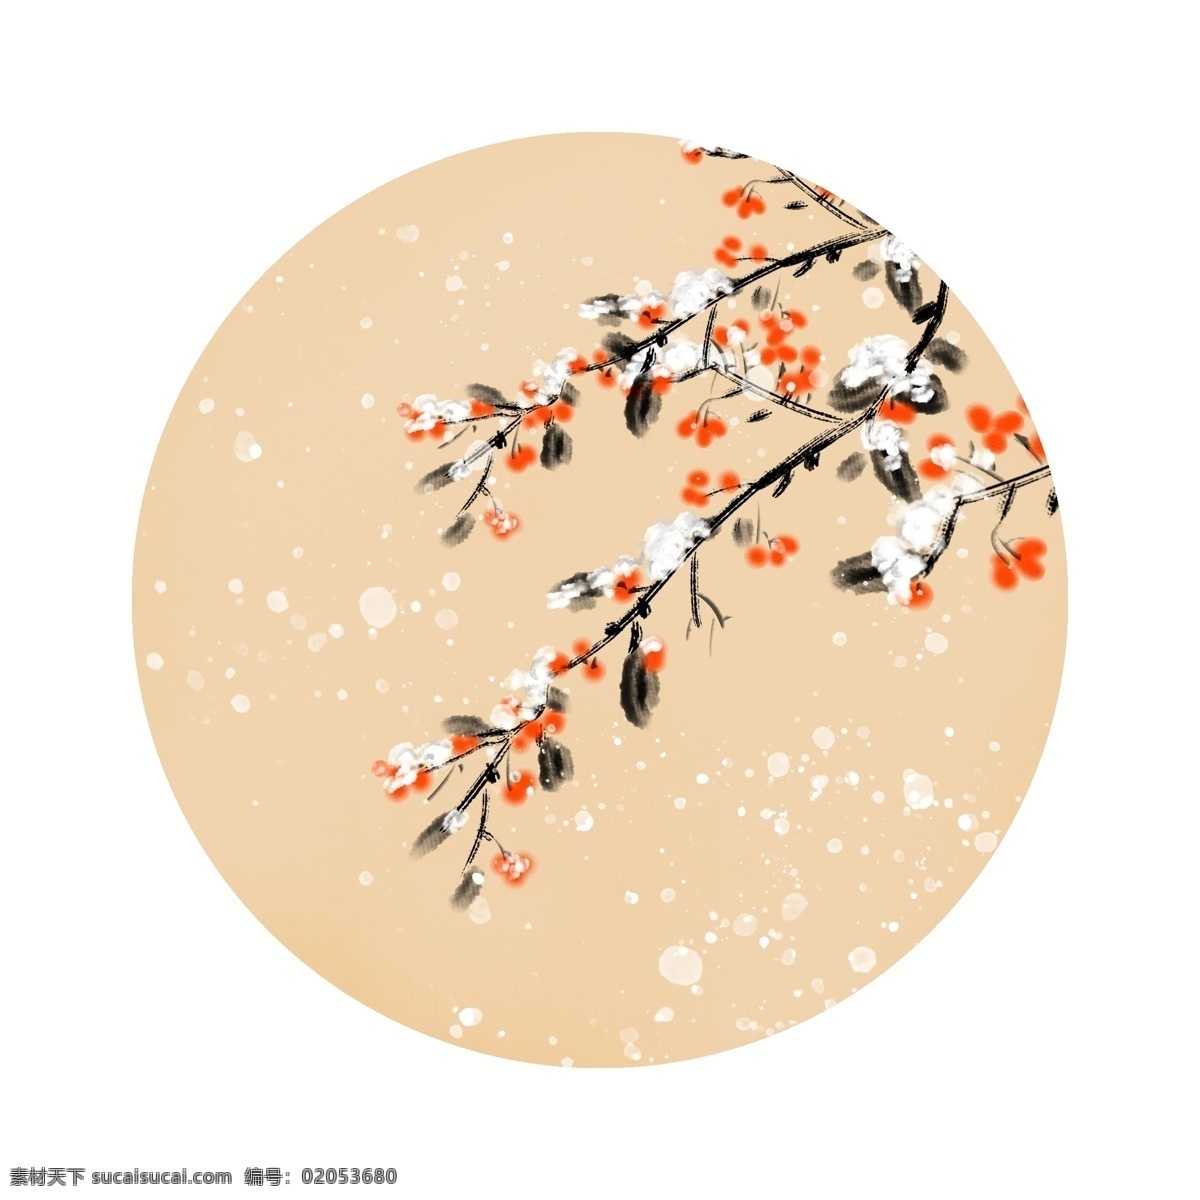 冬季 漂亮 圆形 边框 卡通边框 手绘圆形边框 冬季圆形边框 黄色的花朵 落雪的树叶 漂亮的边框